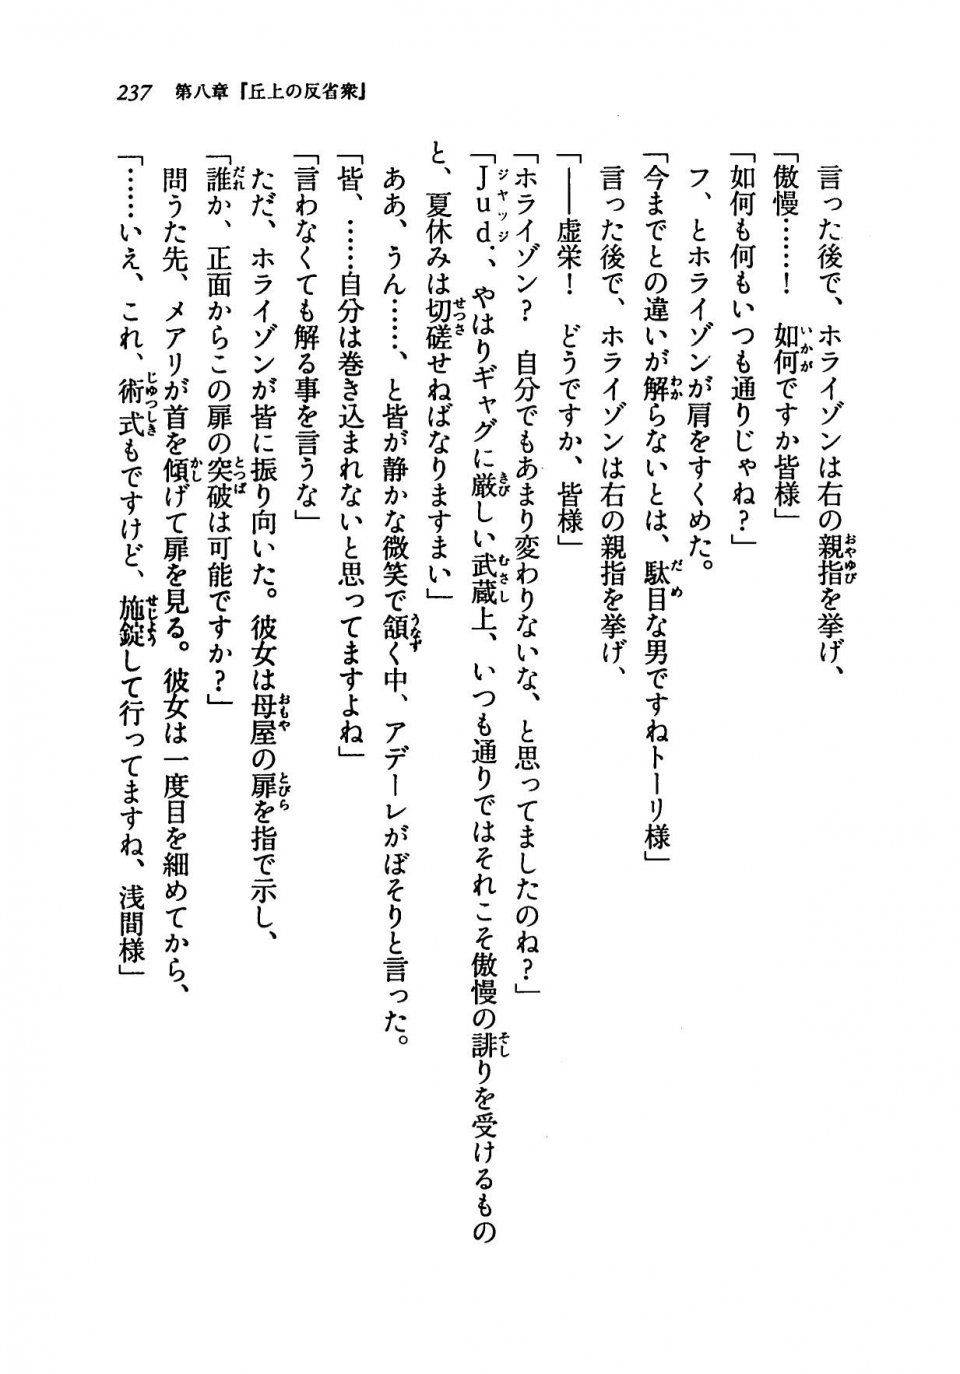 Kyoukai Senjou no Horizon LN Vol 19(8A) - Photo #237